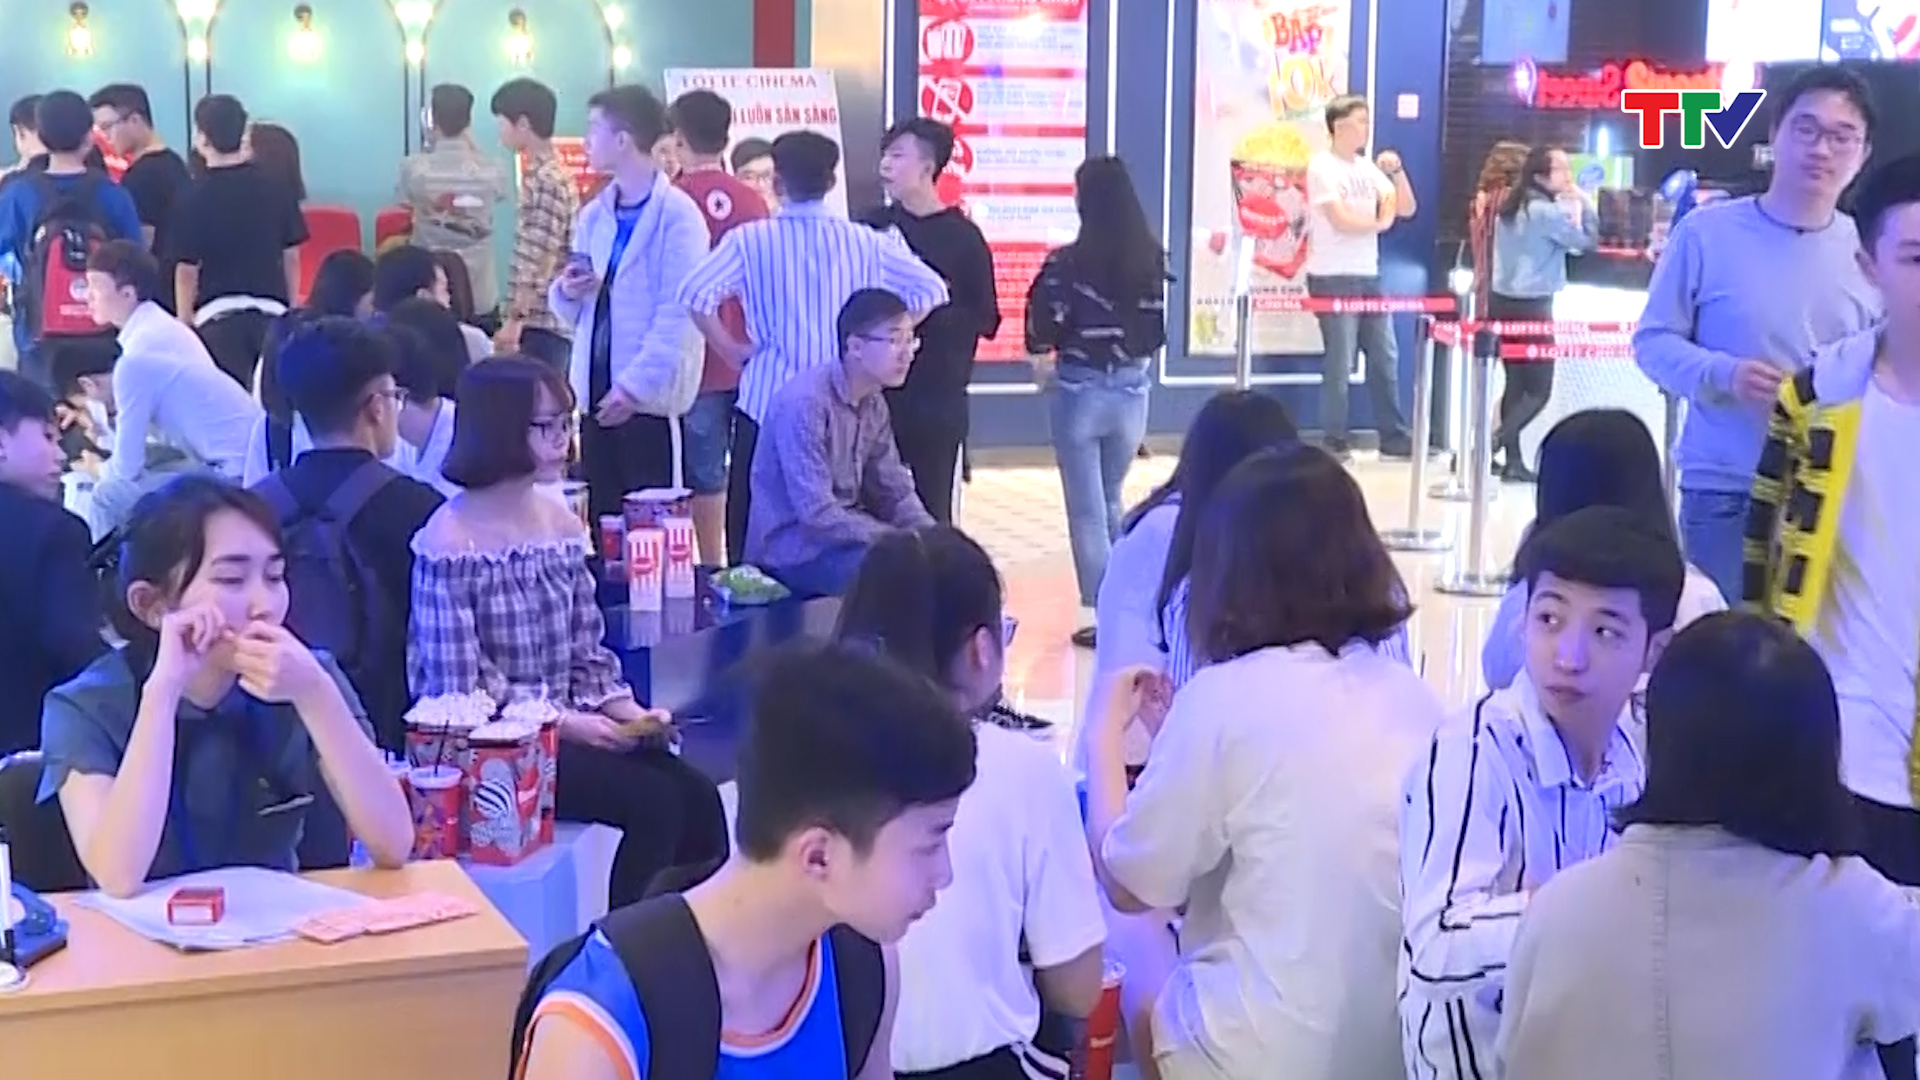 Trung tâm thương mại Vincom (Thành phố Thanh Hóa)  thu hút khá đông người dân đến vui chơi, tham quan.